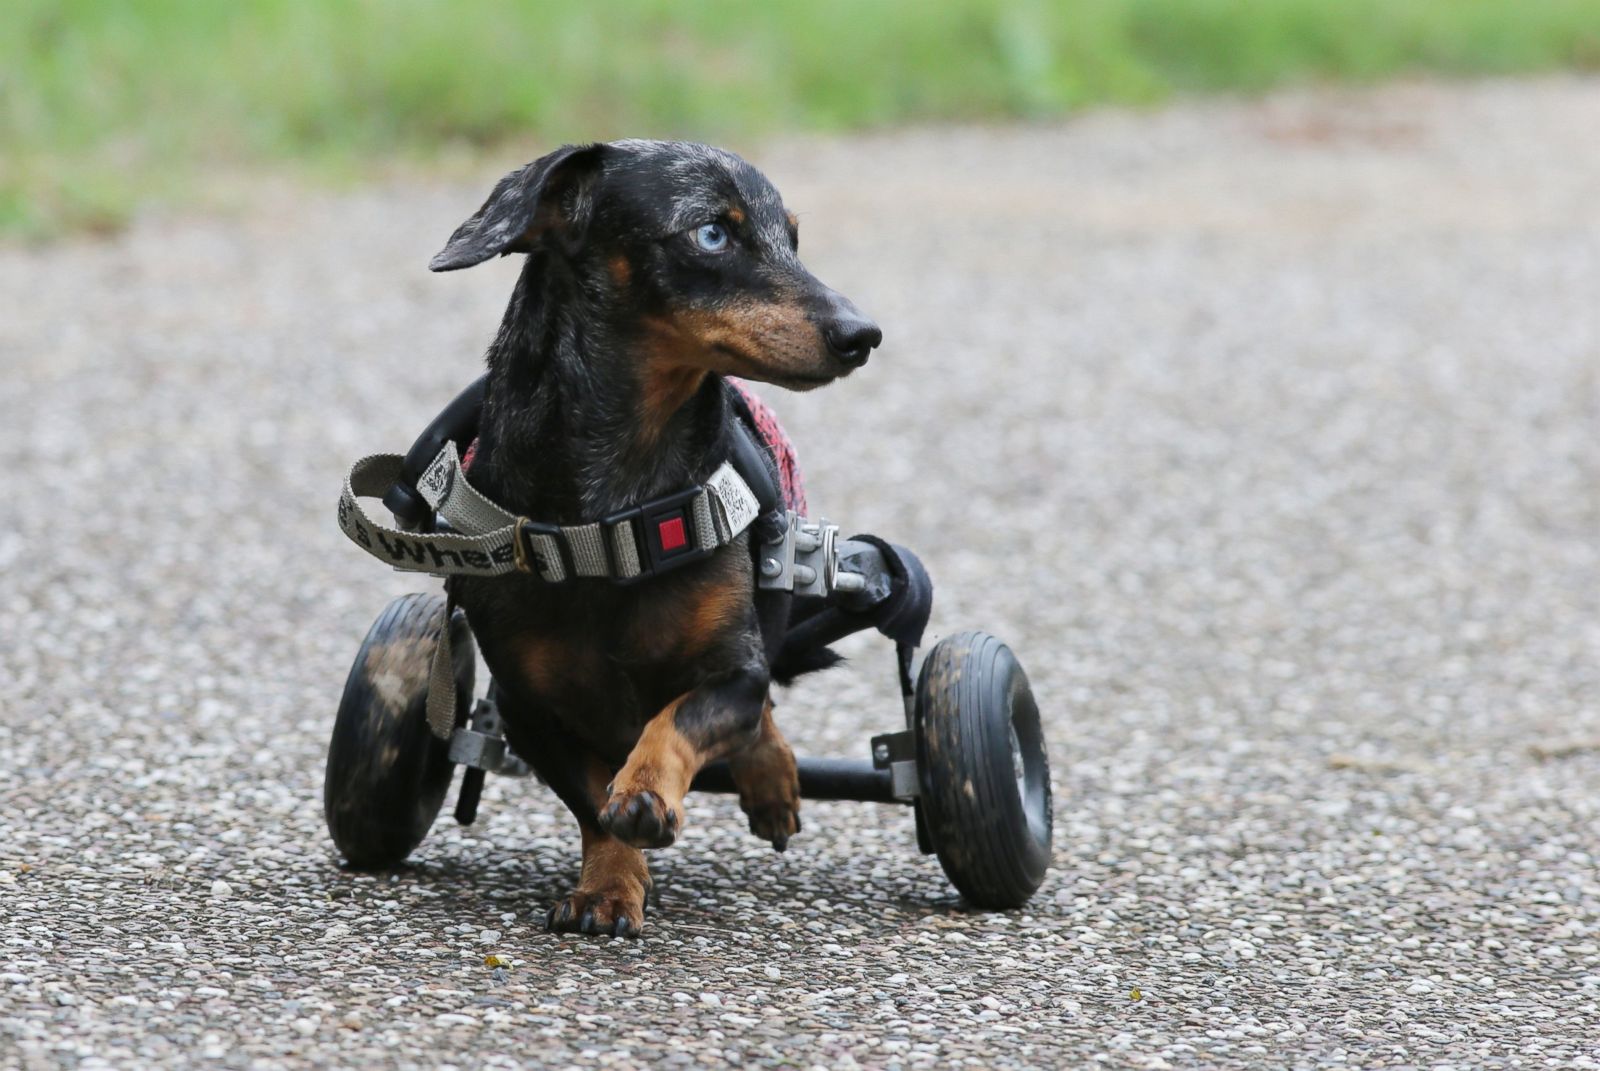 Adorable animals overcome disabilities Photos - ABC News